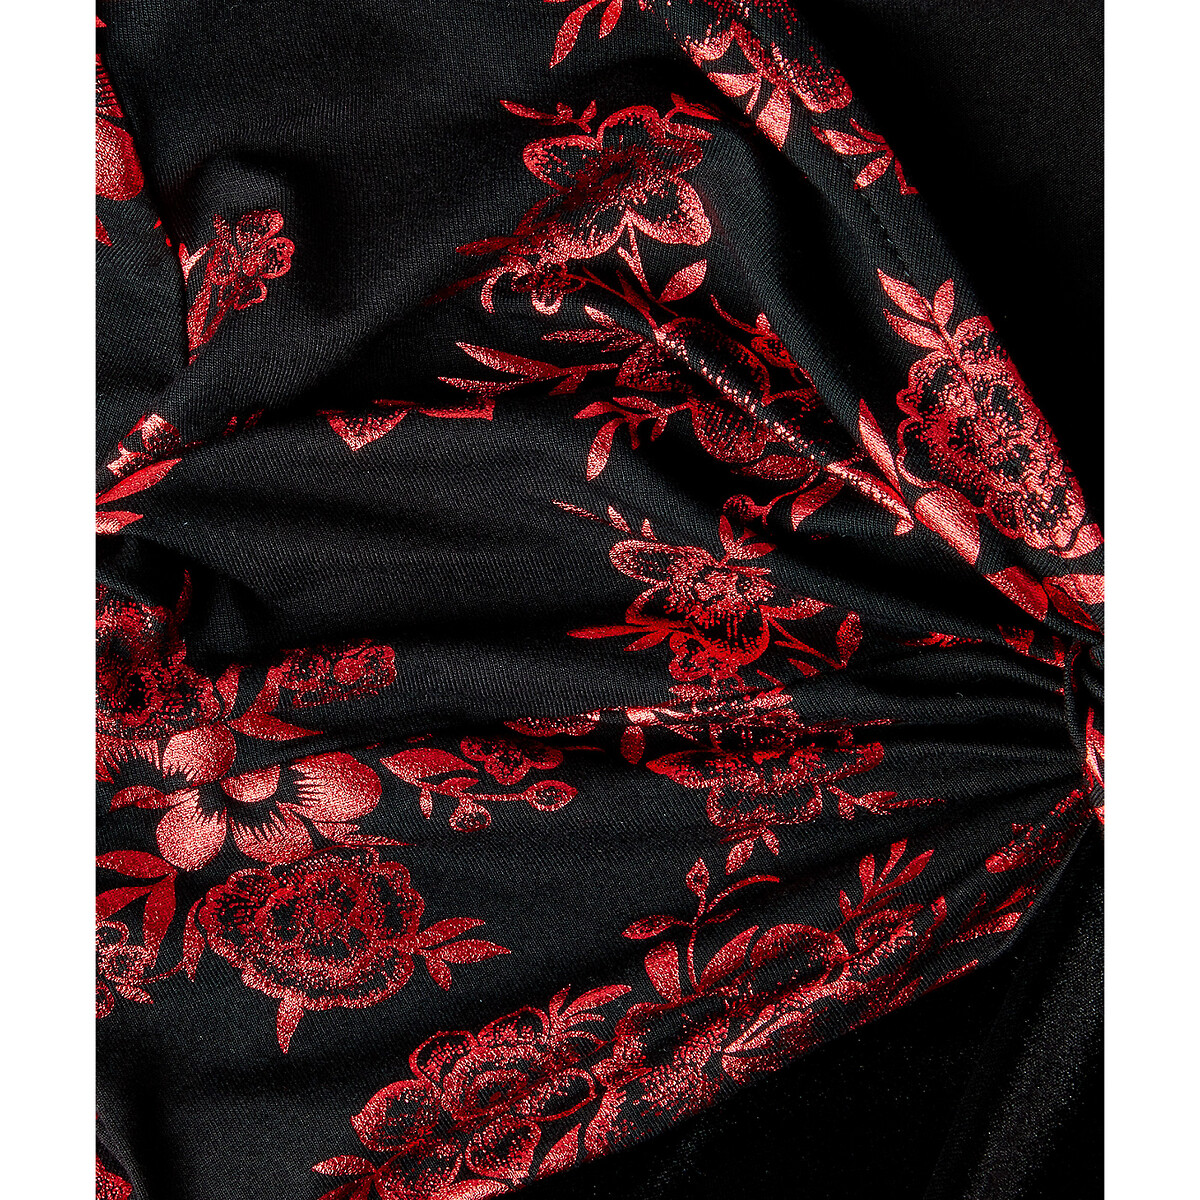 Платье LaRedoute Из велюра с рисунком V-образный вырез эффект завязок 42 (FR) - 48 (RUS) черный, размер 42 (FR) - 48 (RUS) Из велюра с рисунком V-образный вырез эффект завязок 42 (FR) - 48 (RUS) черный - фото 4